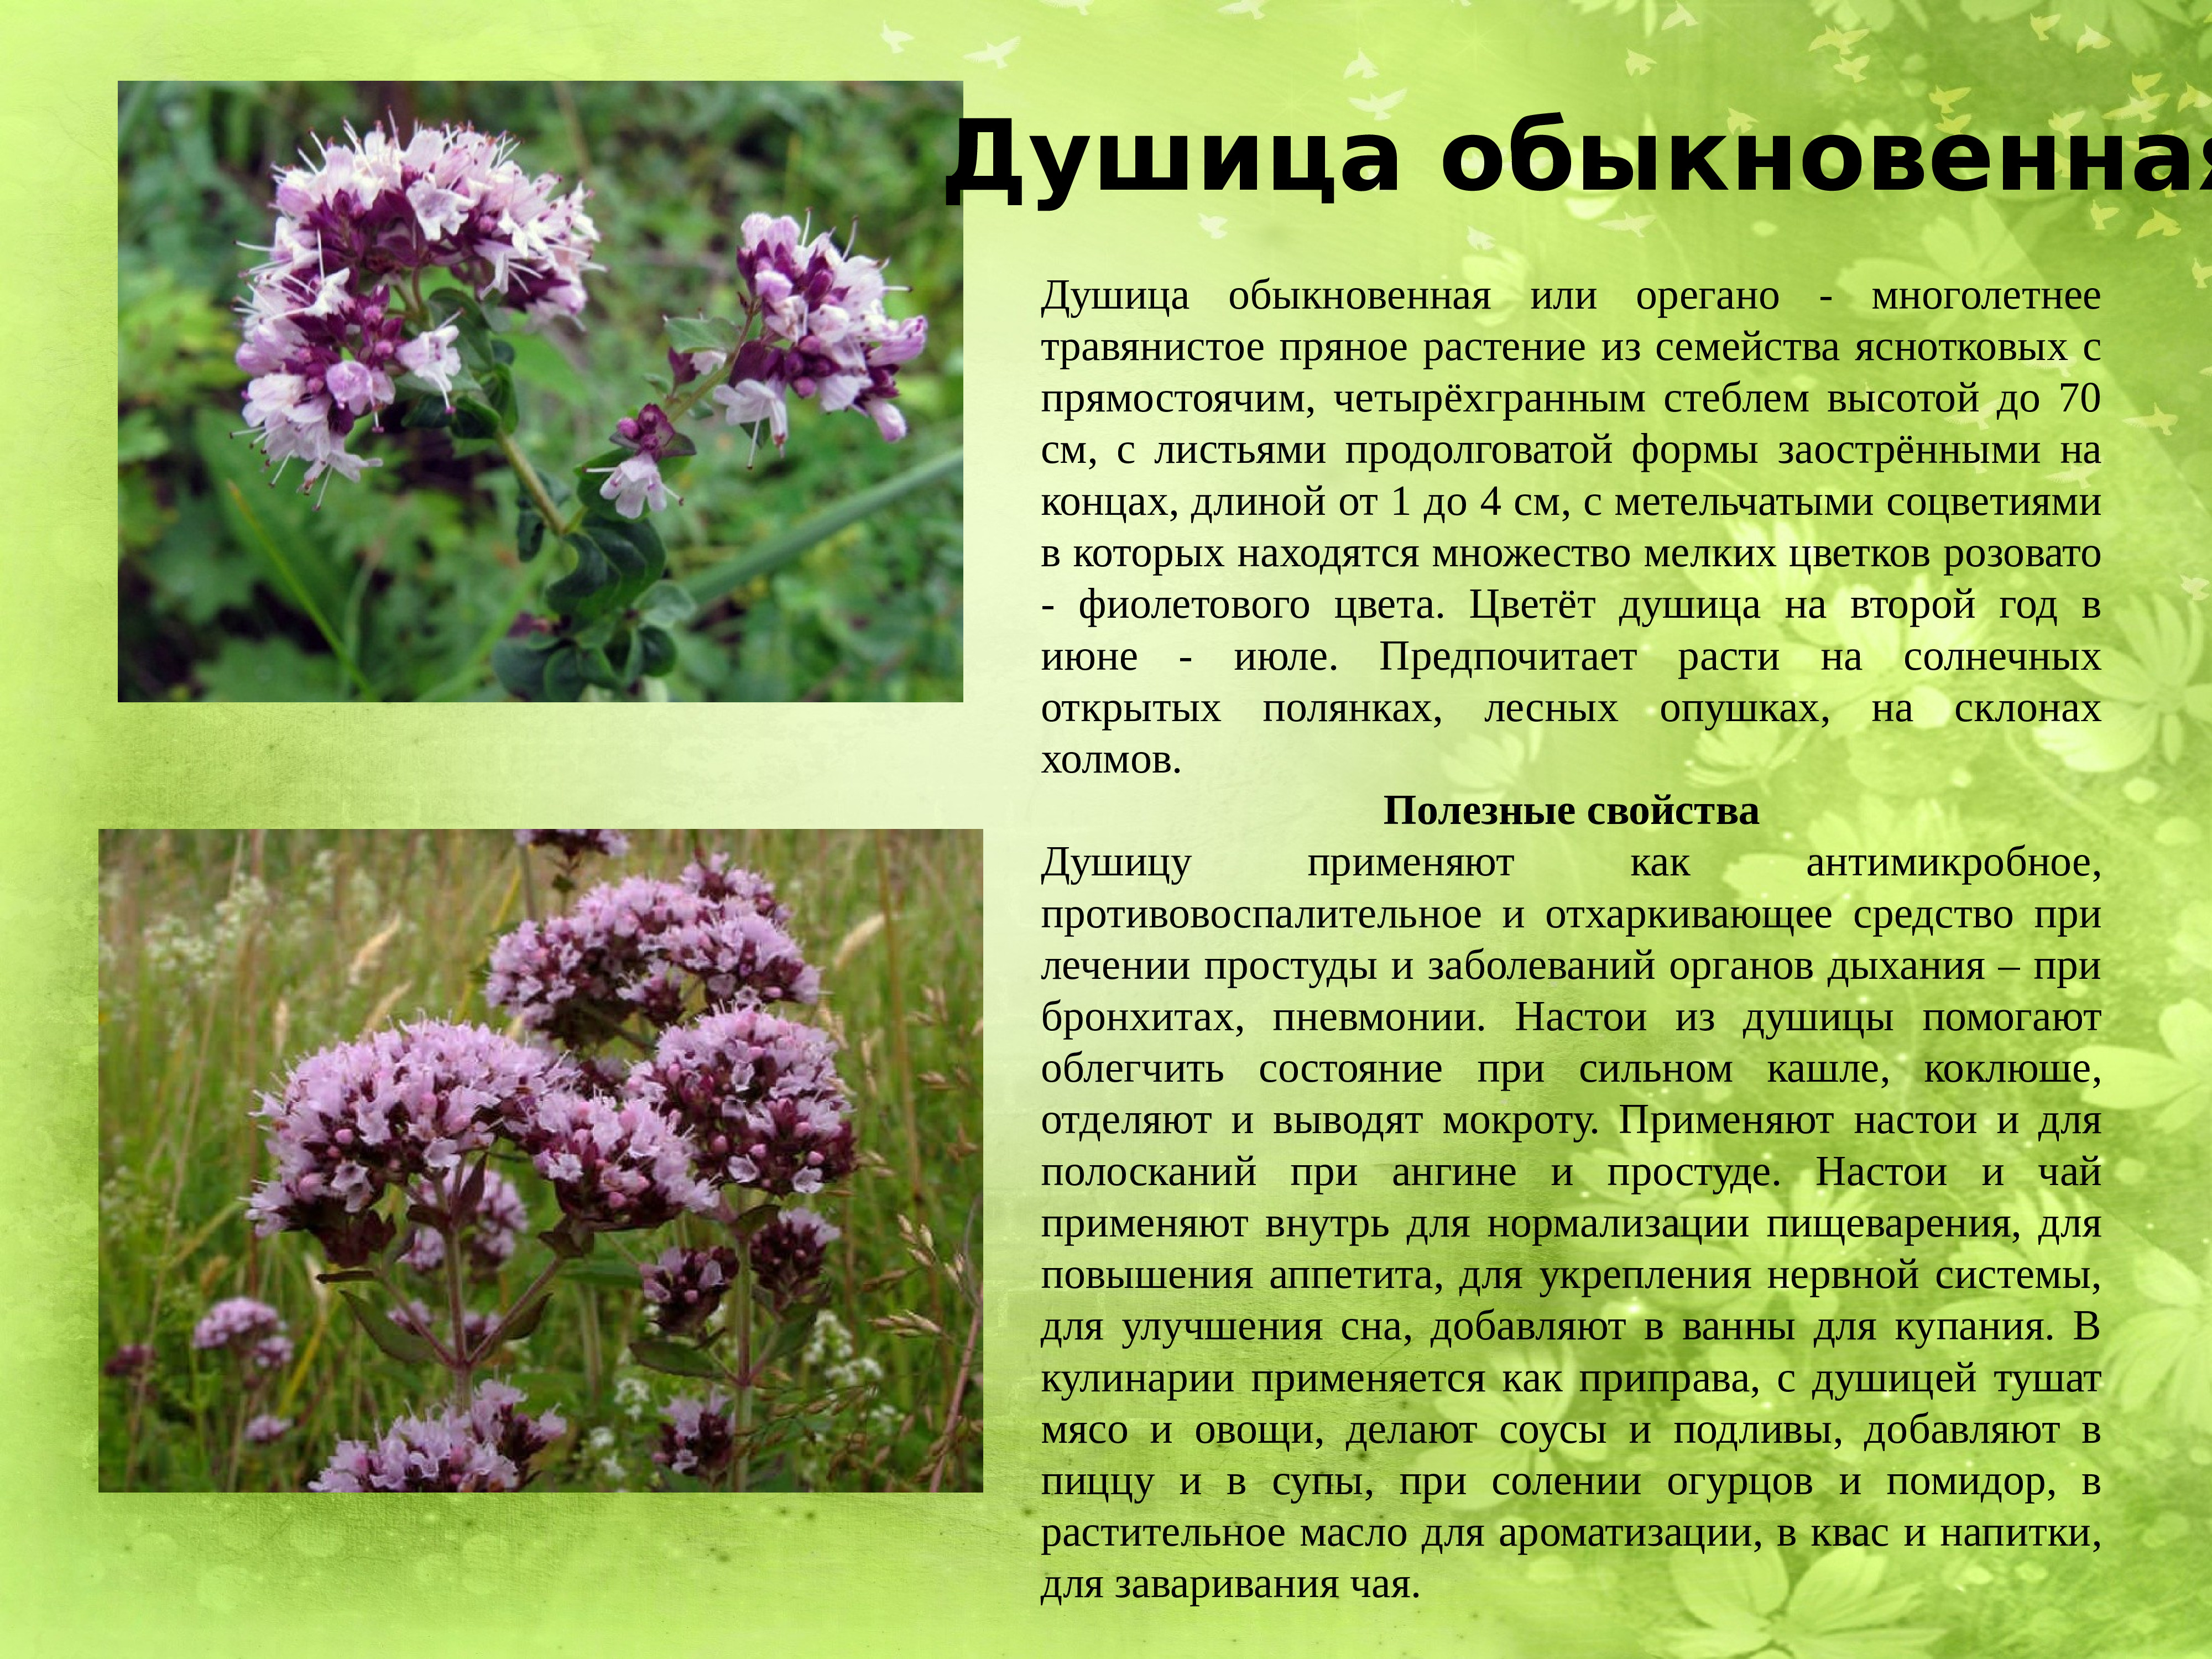 Лекарственные растения Мордовии описание